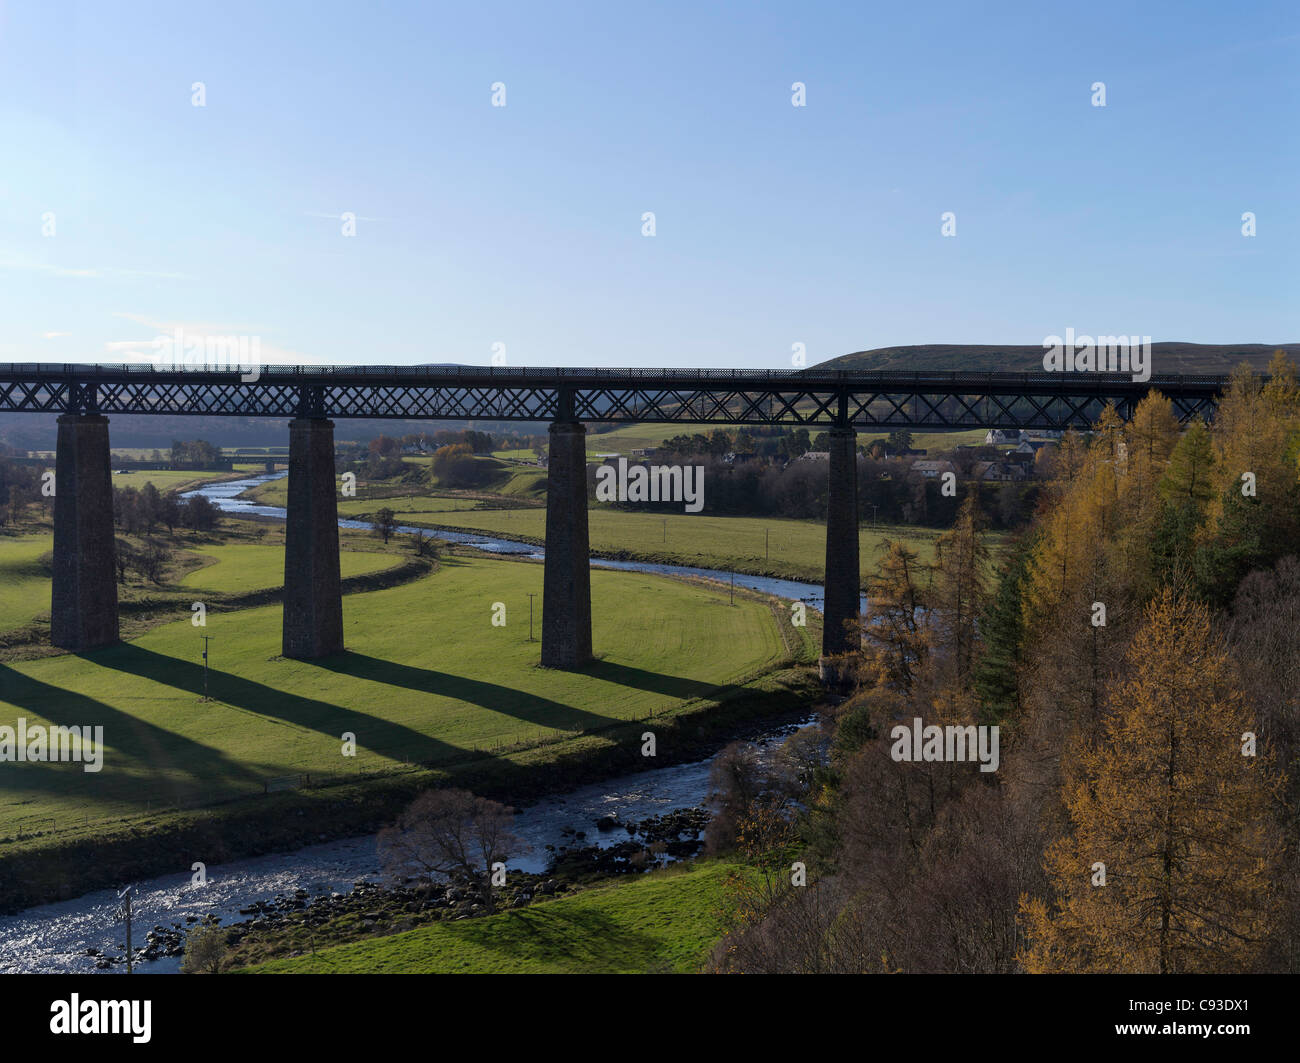 dh Findhorn Viaduct TOMATIN INVERNESSSHIRE pont de viaduct de chemin de fer écossais des Highlands De l'autre côté de la rivière Findhorn, en écosse Banque D'Images